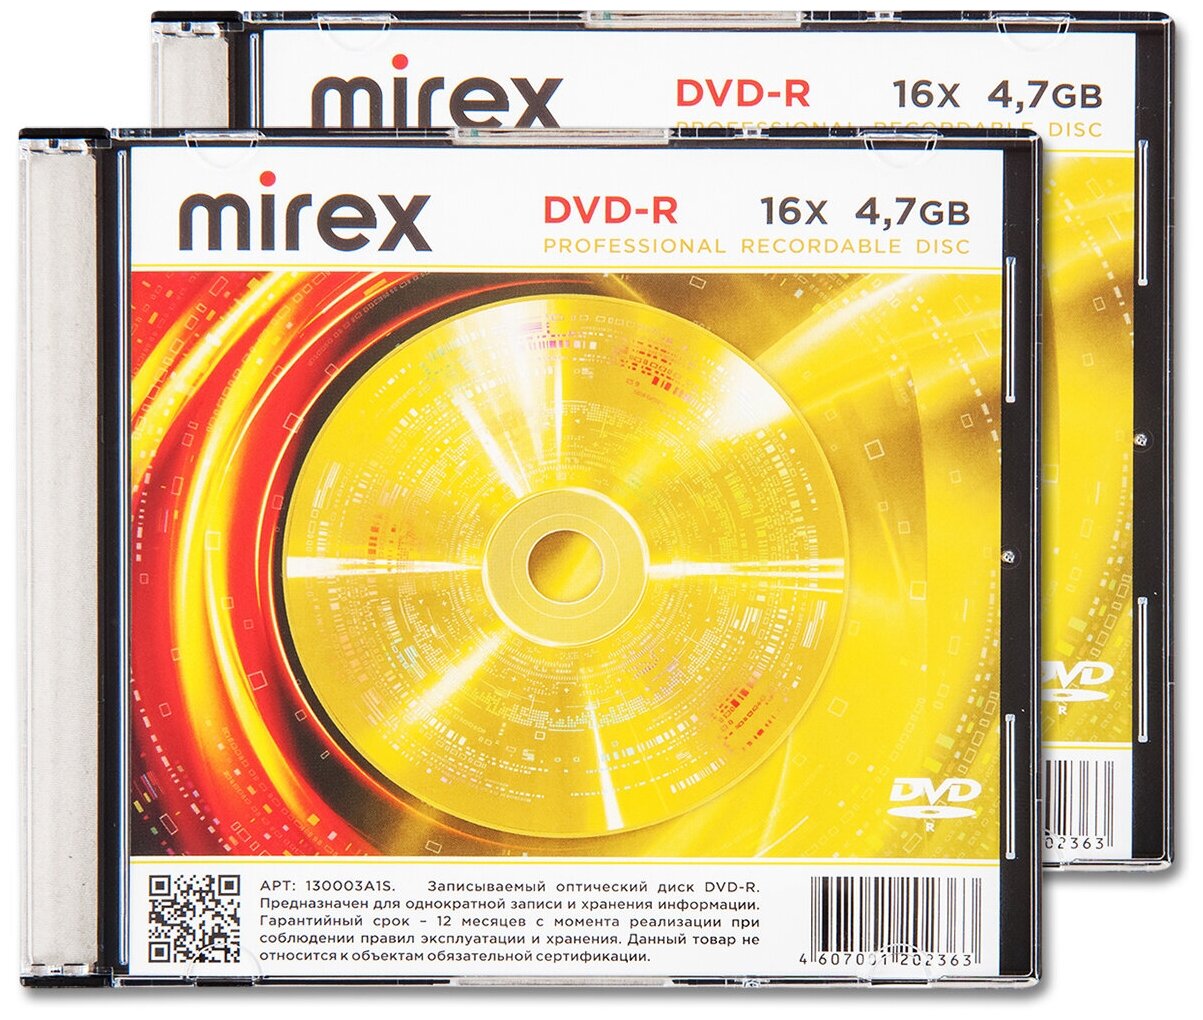 Диск Mirex DVD-R 4,7Gb 16x slim box, упаковка 2 шт.